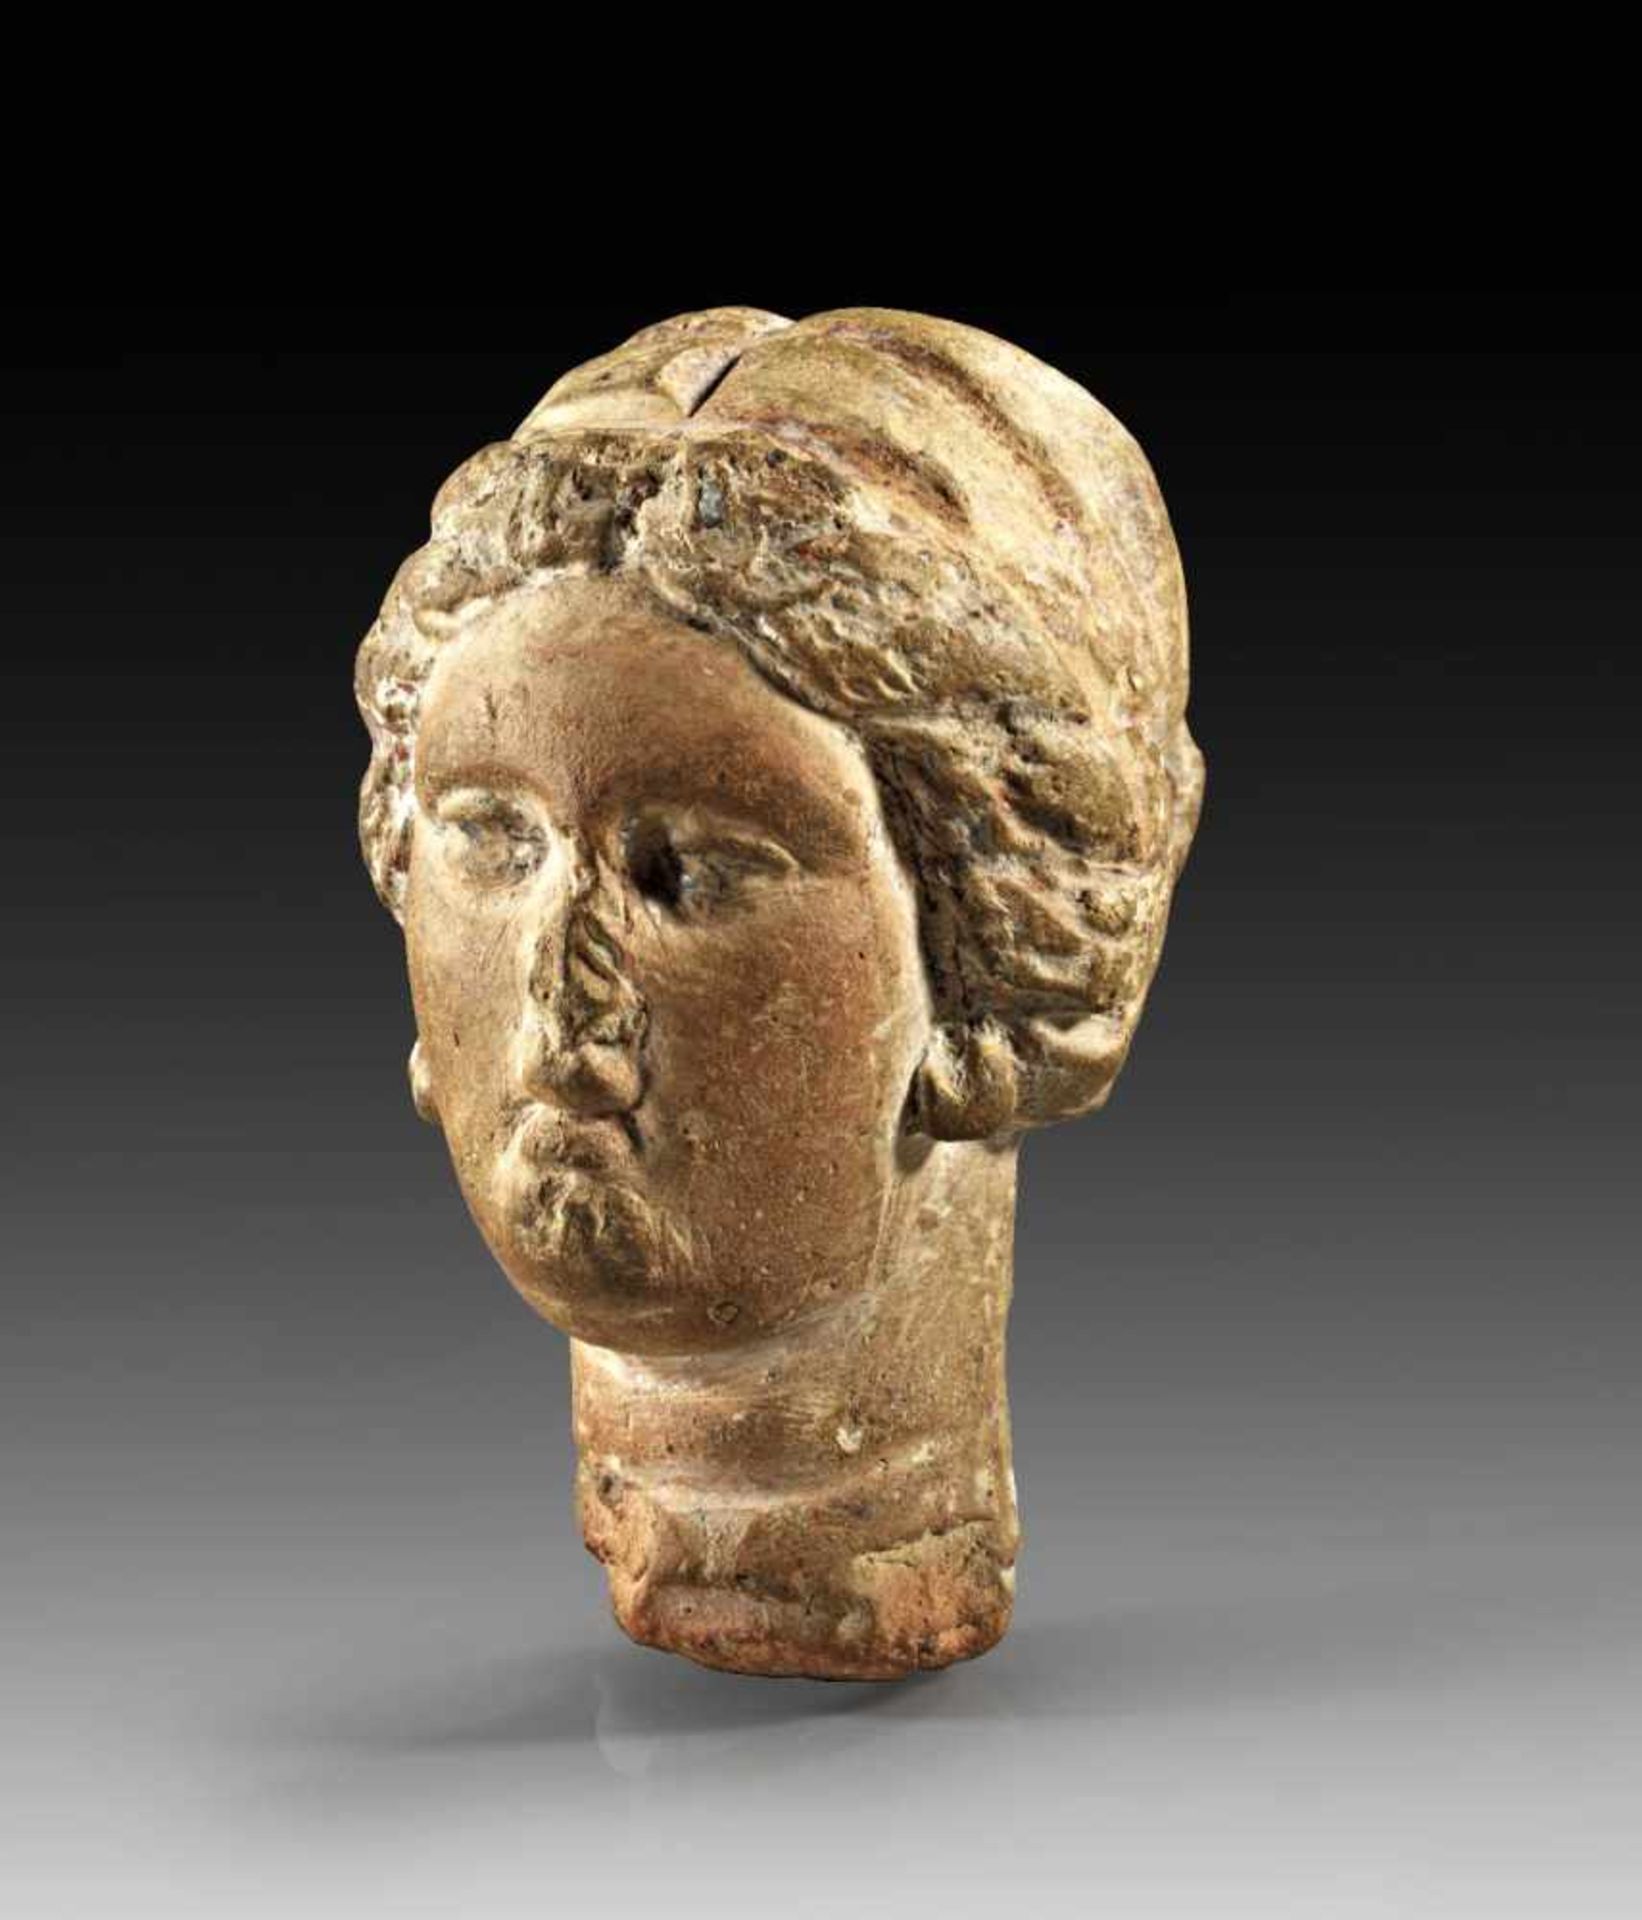 Weibliches Köpfchen. 3. Jh. v. Chr. Terrakotta, H 7cm. Kopf einer jungen Frau mit ovalem,